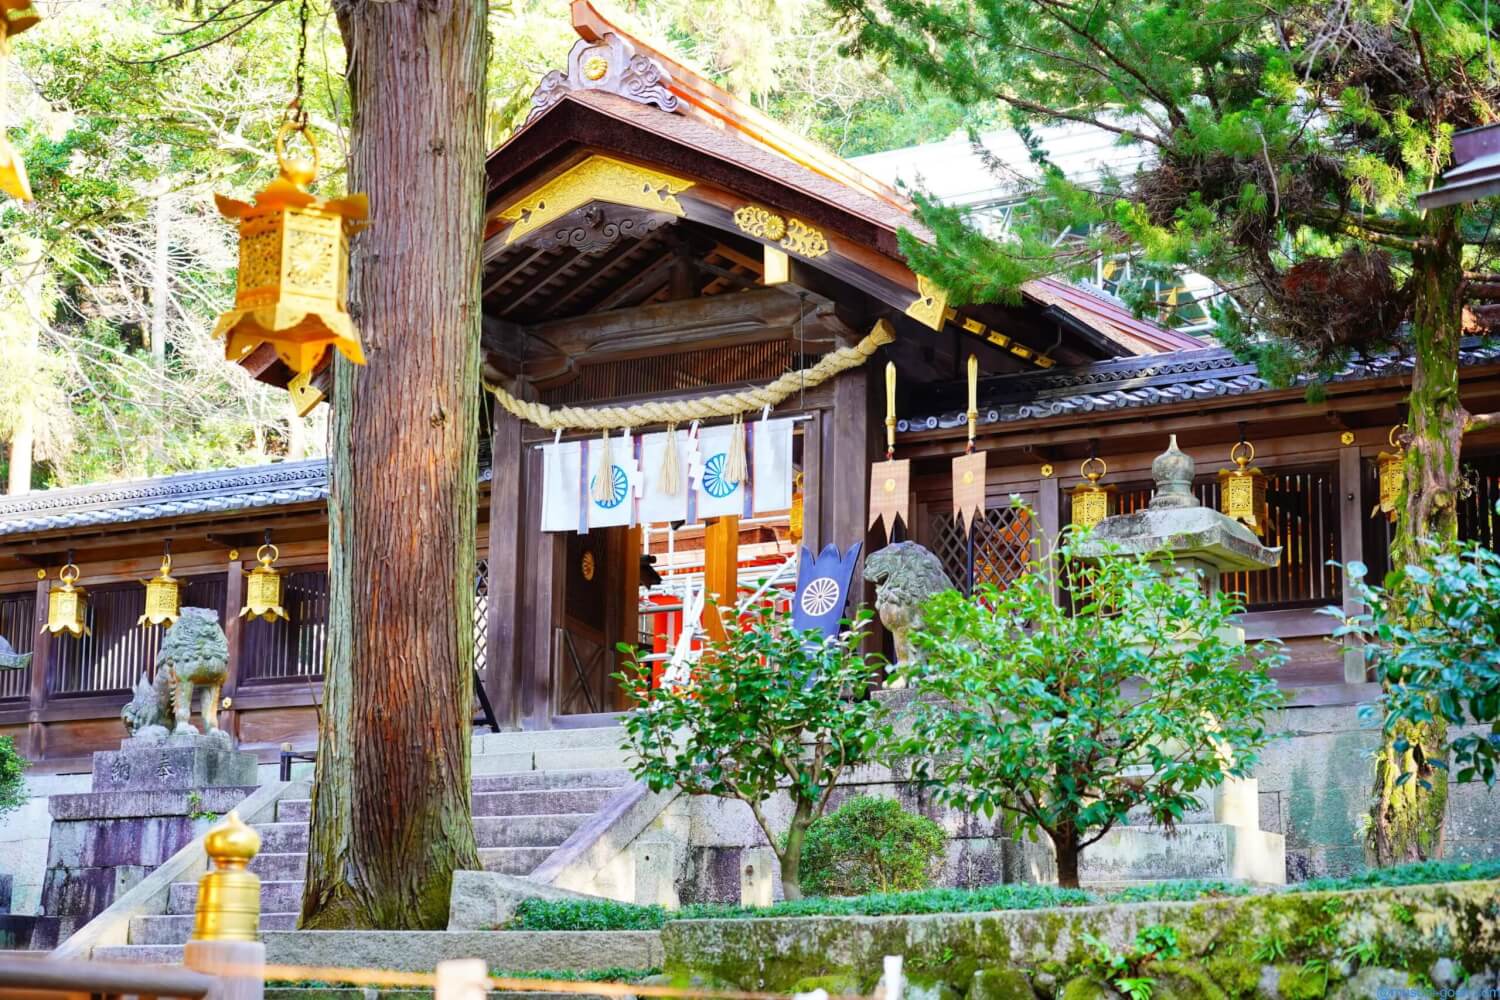 大阪 枚岡神社を訪問 山の麓にある粥占い お笑い神事のあるユニークな神社 一宮 Lifetime Trip